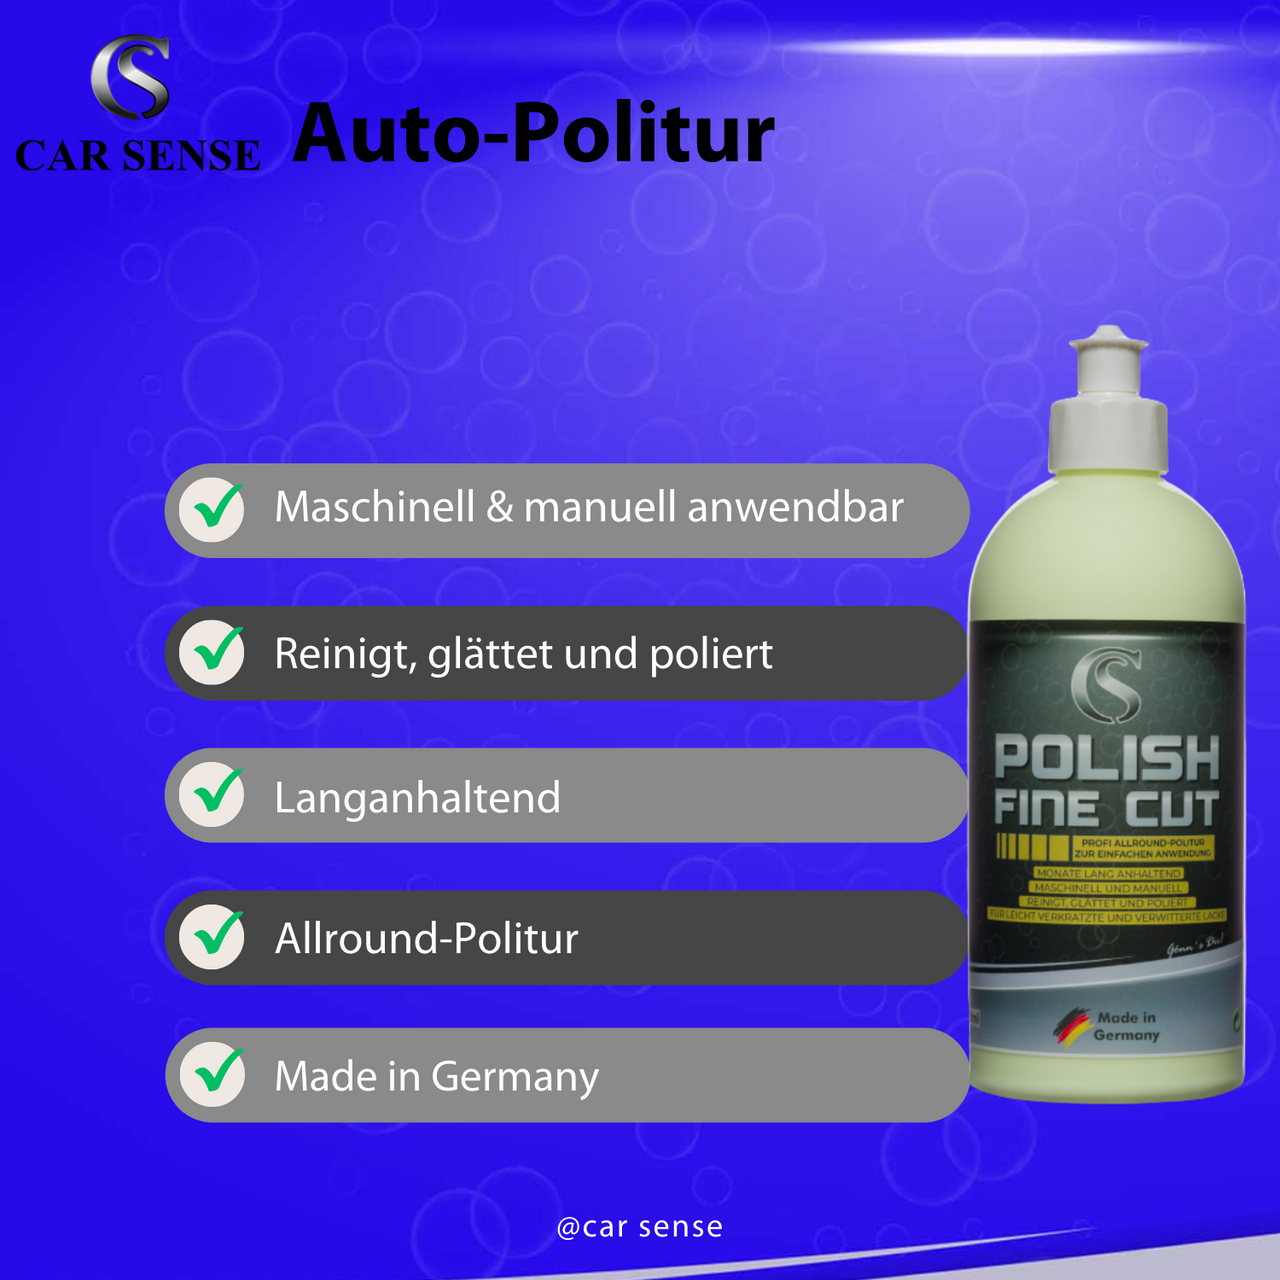 Car Sense Polish Fine Cut All-in-One Politur mit Schleifkörnern auf Aluminiumoxid-Basis und Wachs | Reinigt, glättet und poliert in einem Arbeitsgang | Für gebrauchten Fahrzeuglack